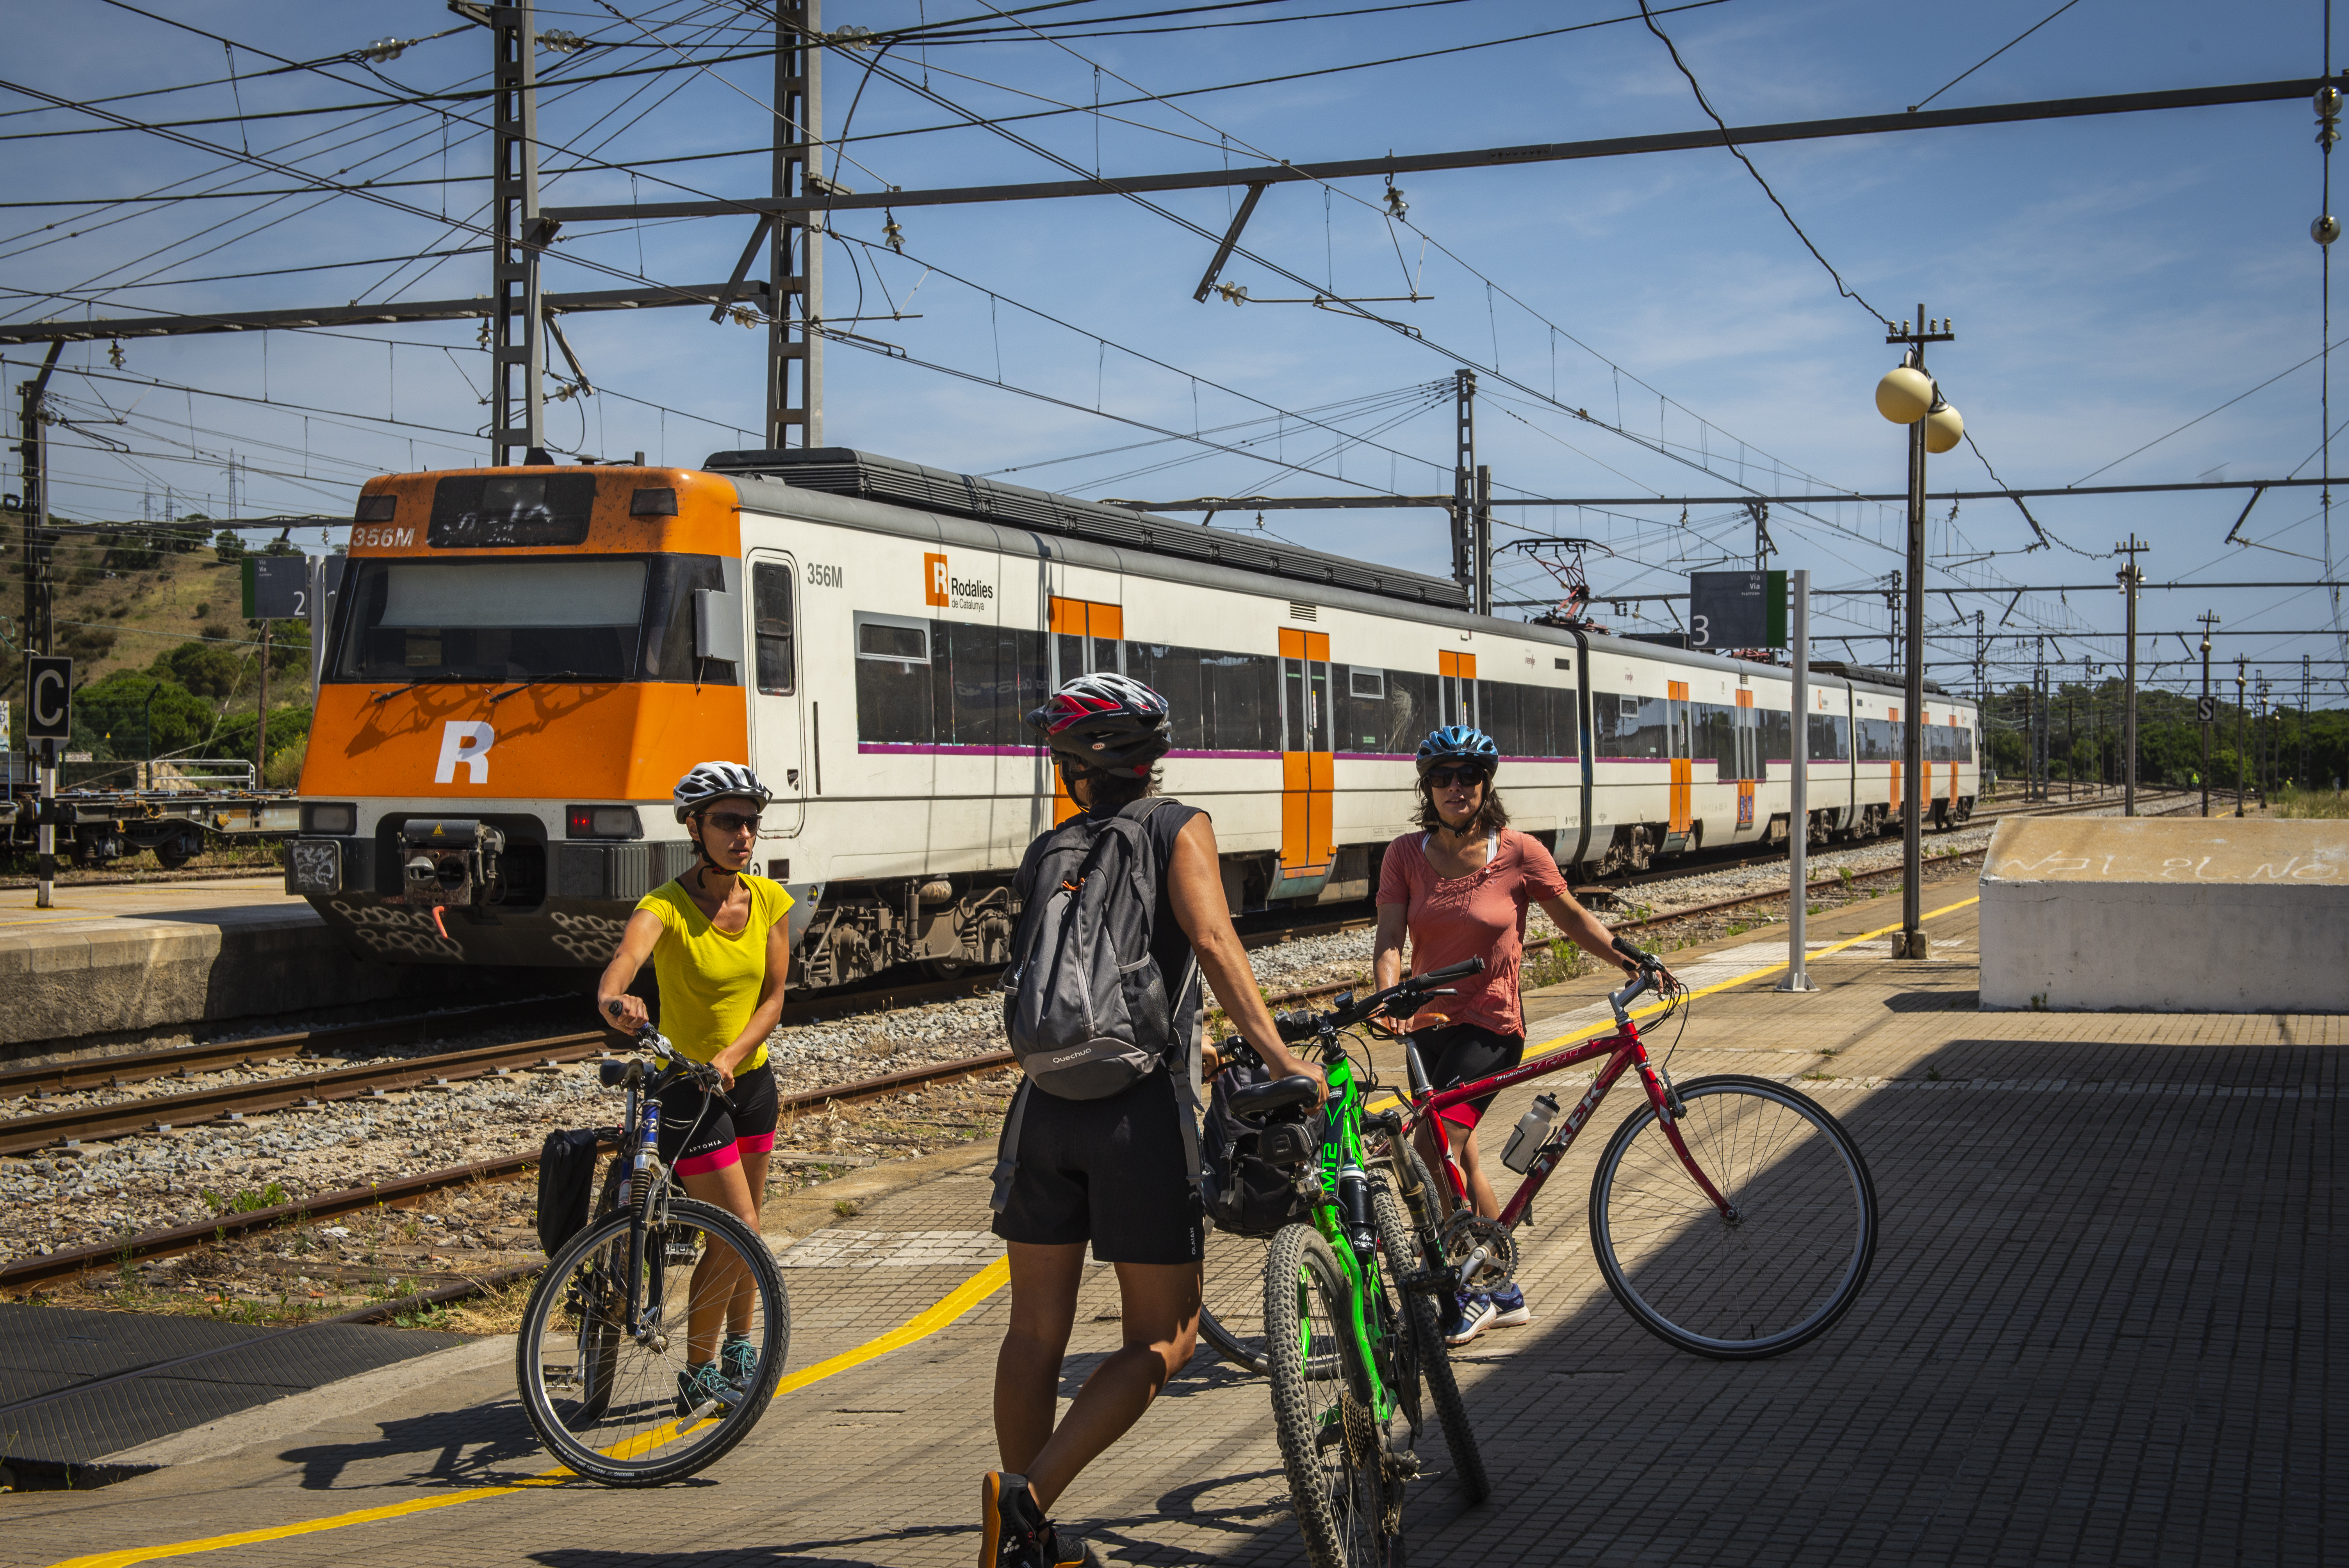 Creuant les víes del tren amb les bicicletes, de ruta ciclista